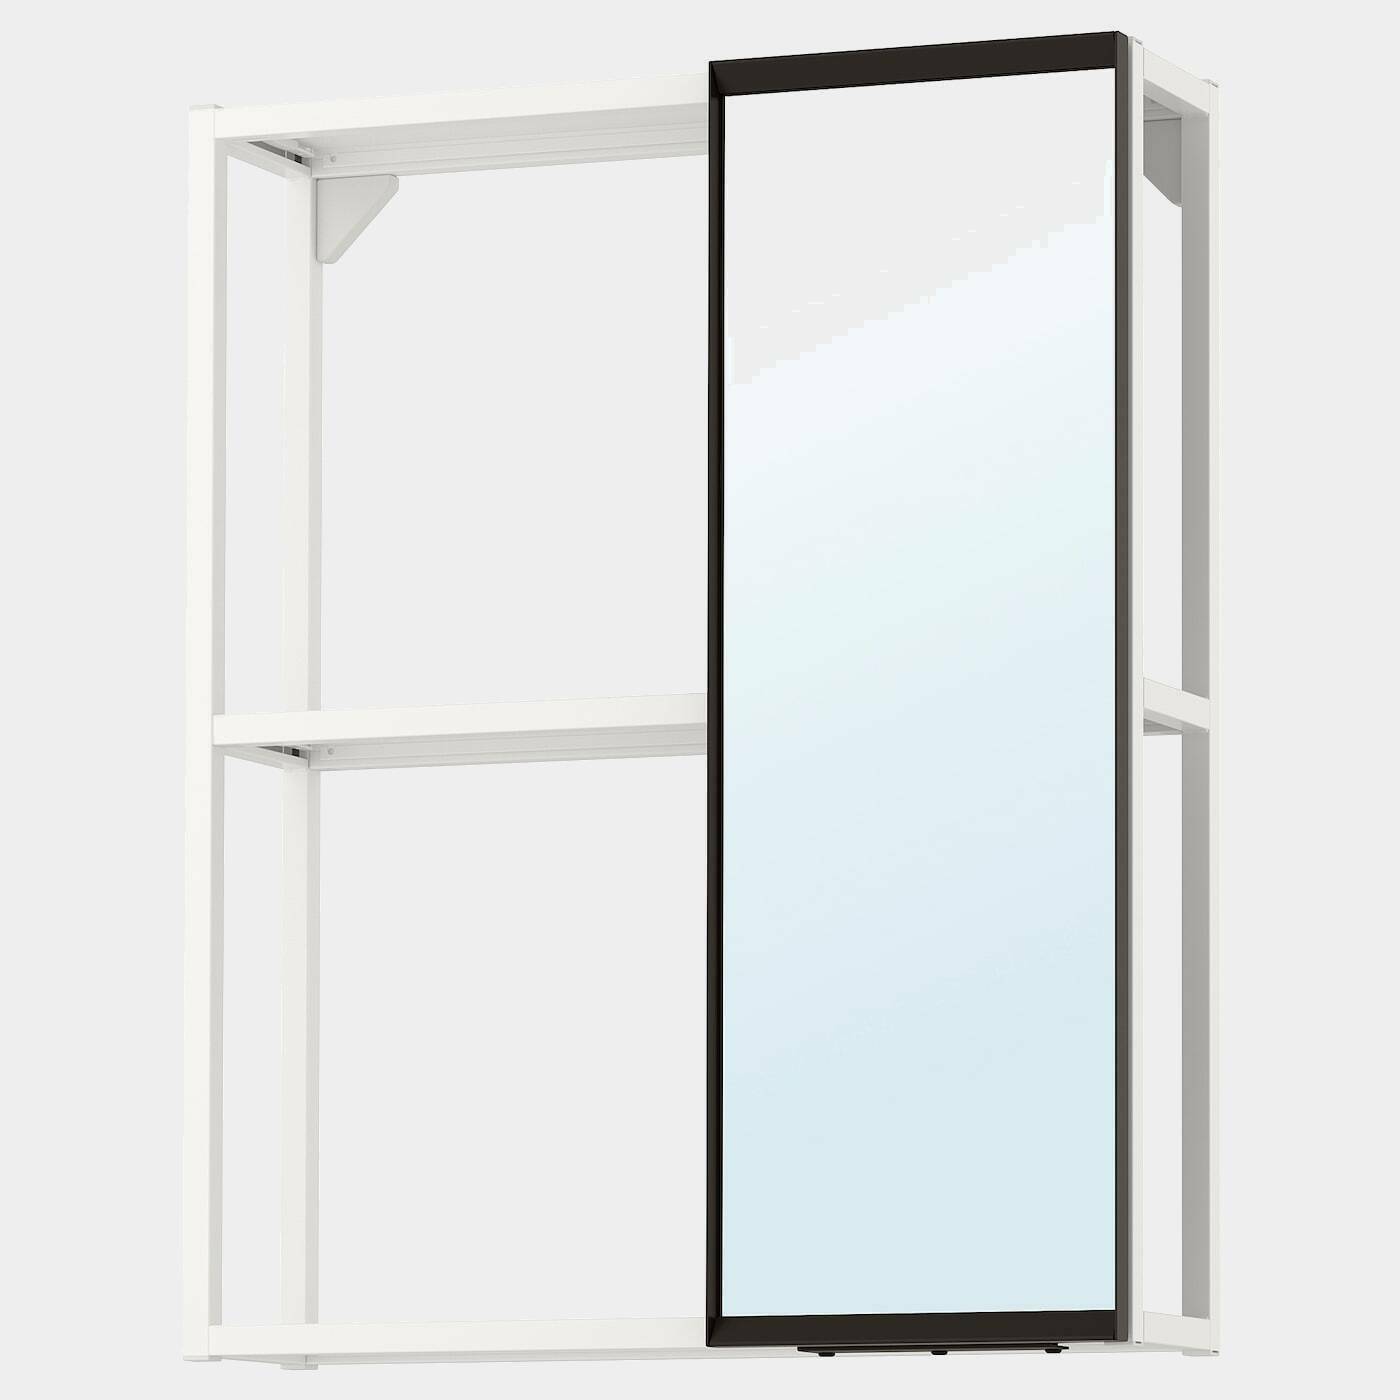 ENHET Spiegelschrank  -  - Möbel Ideen für dein Zuhause von Home Trends. Möbel Trends von Social Media Influencer für dein Skandi Zuhause.